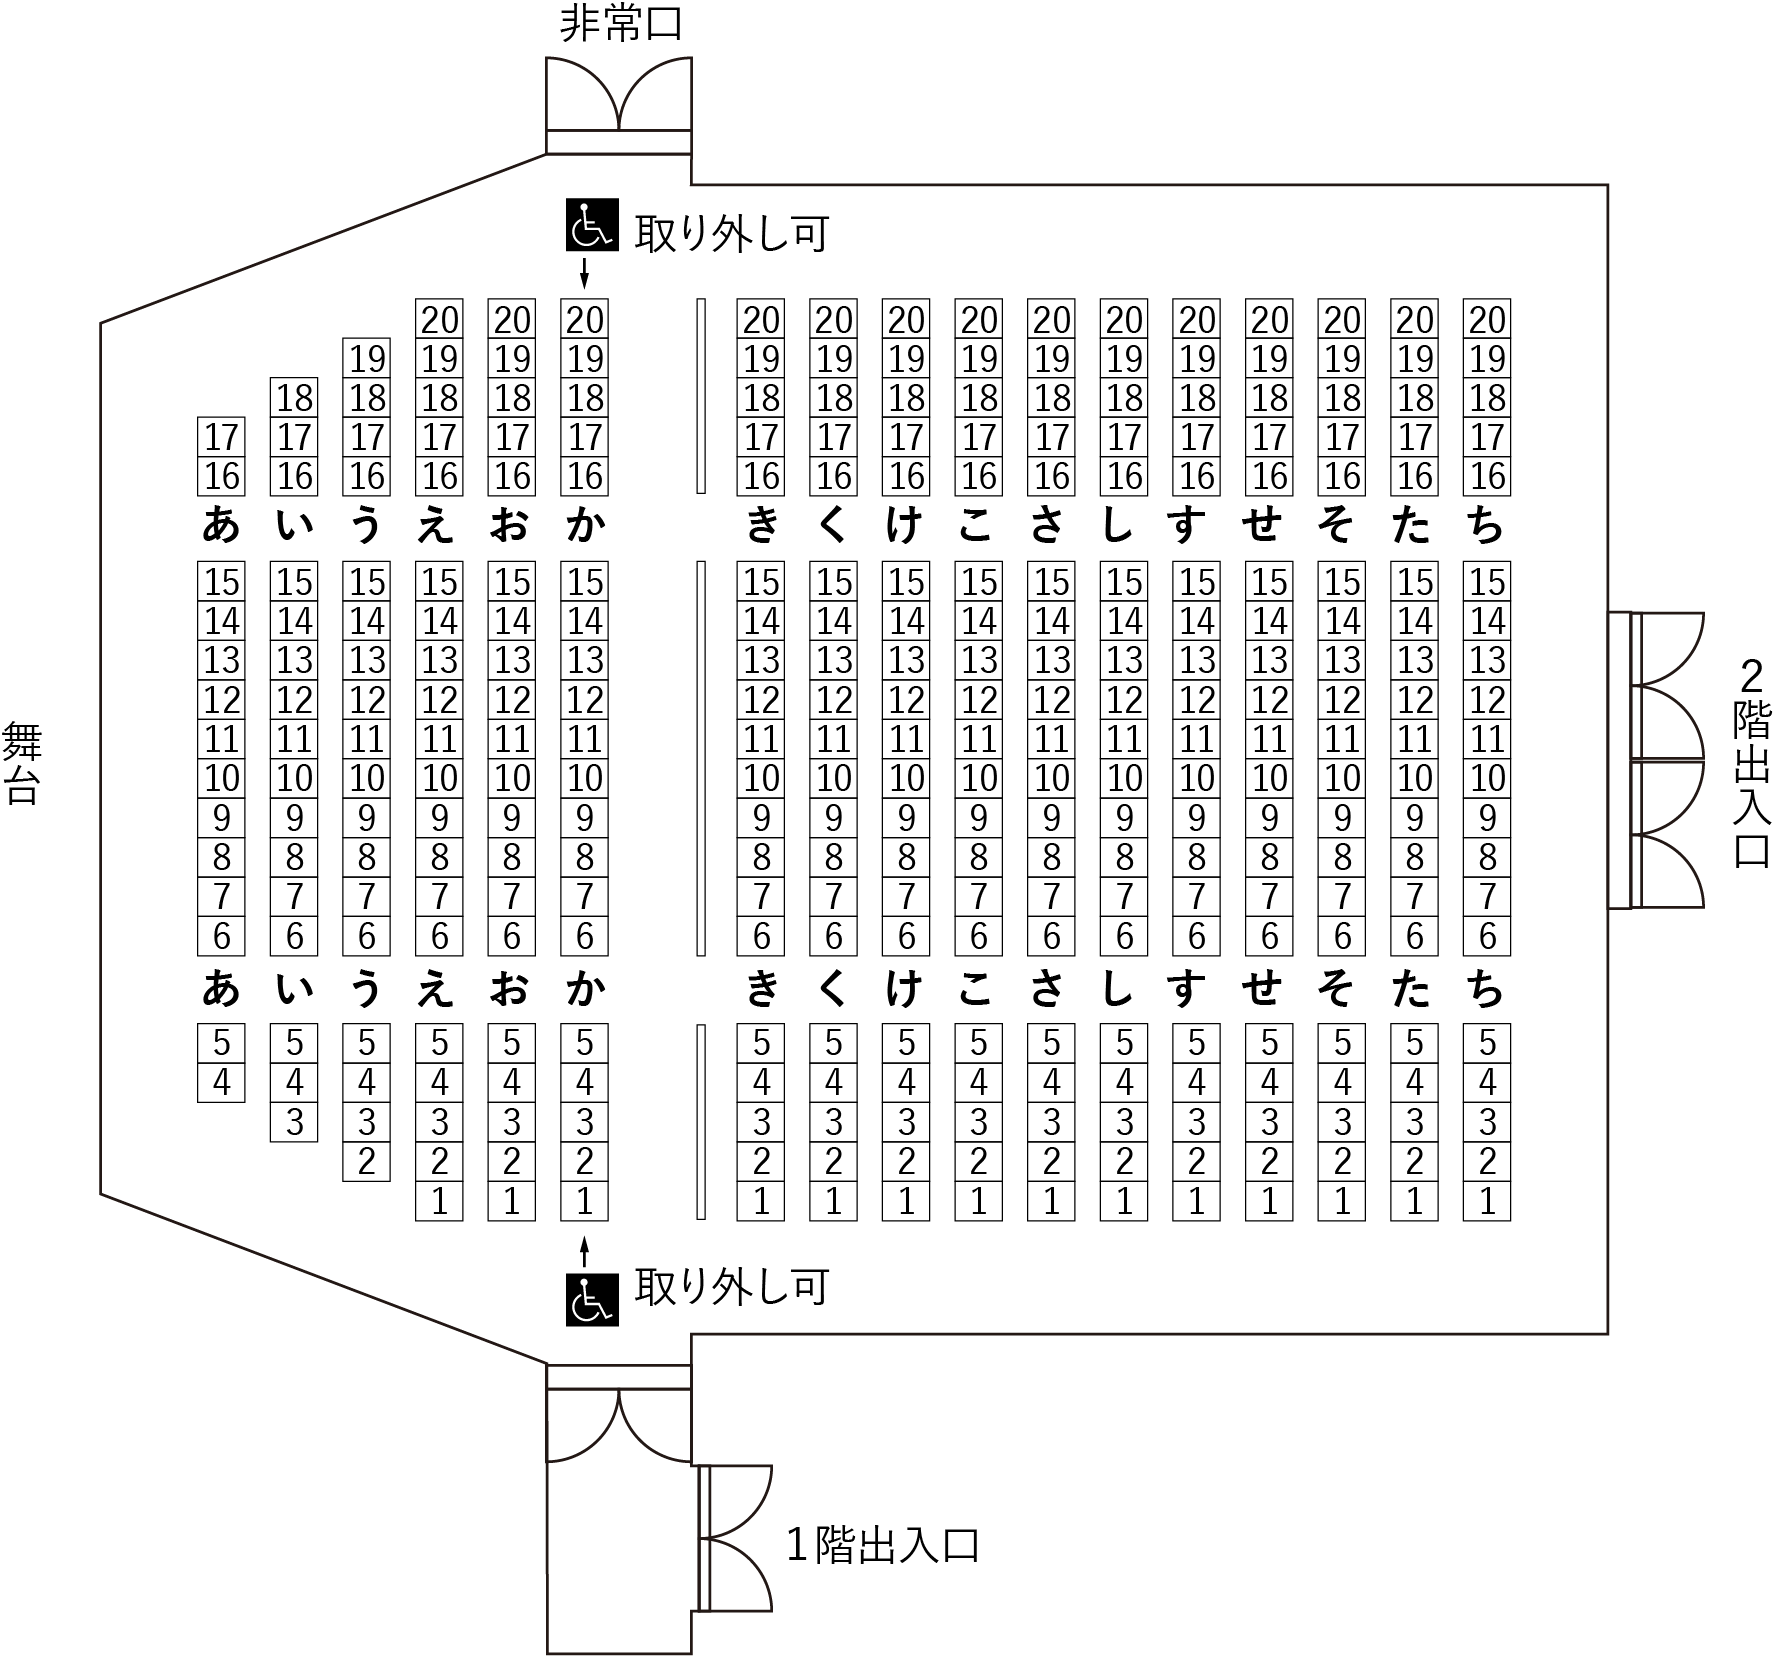 松代文化ホールの座席表